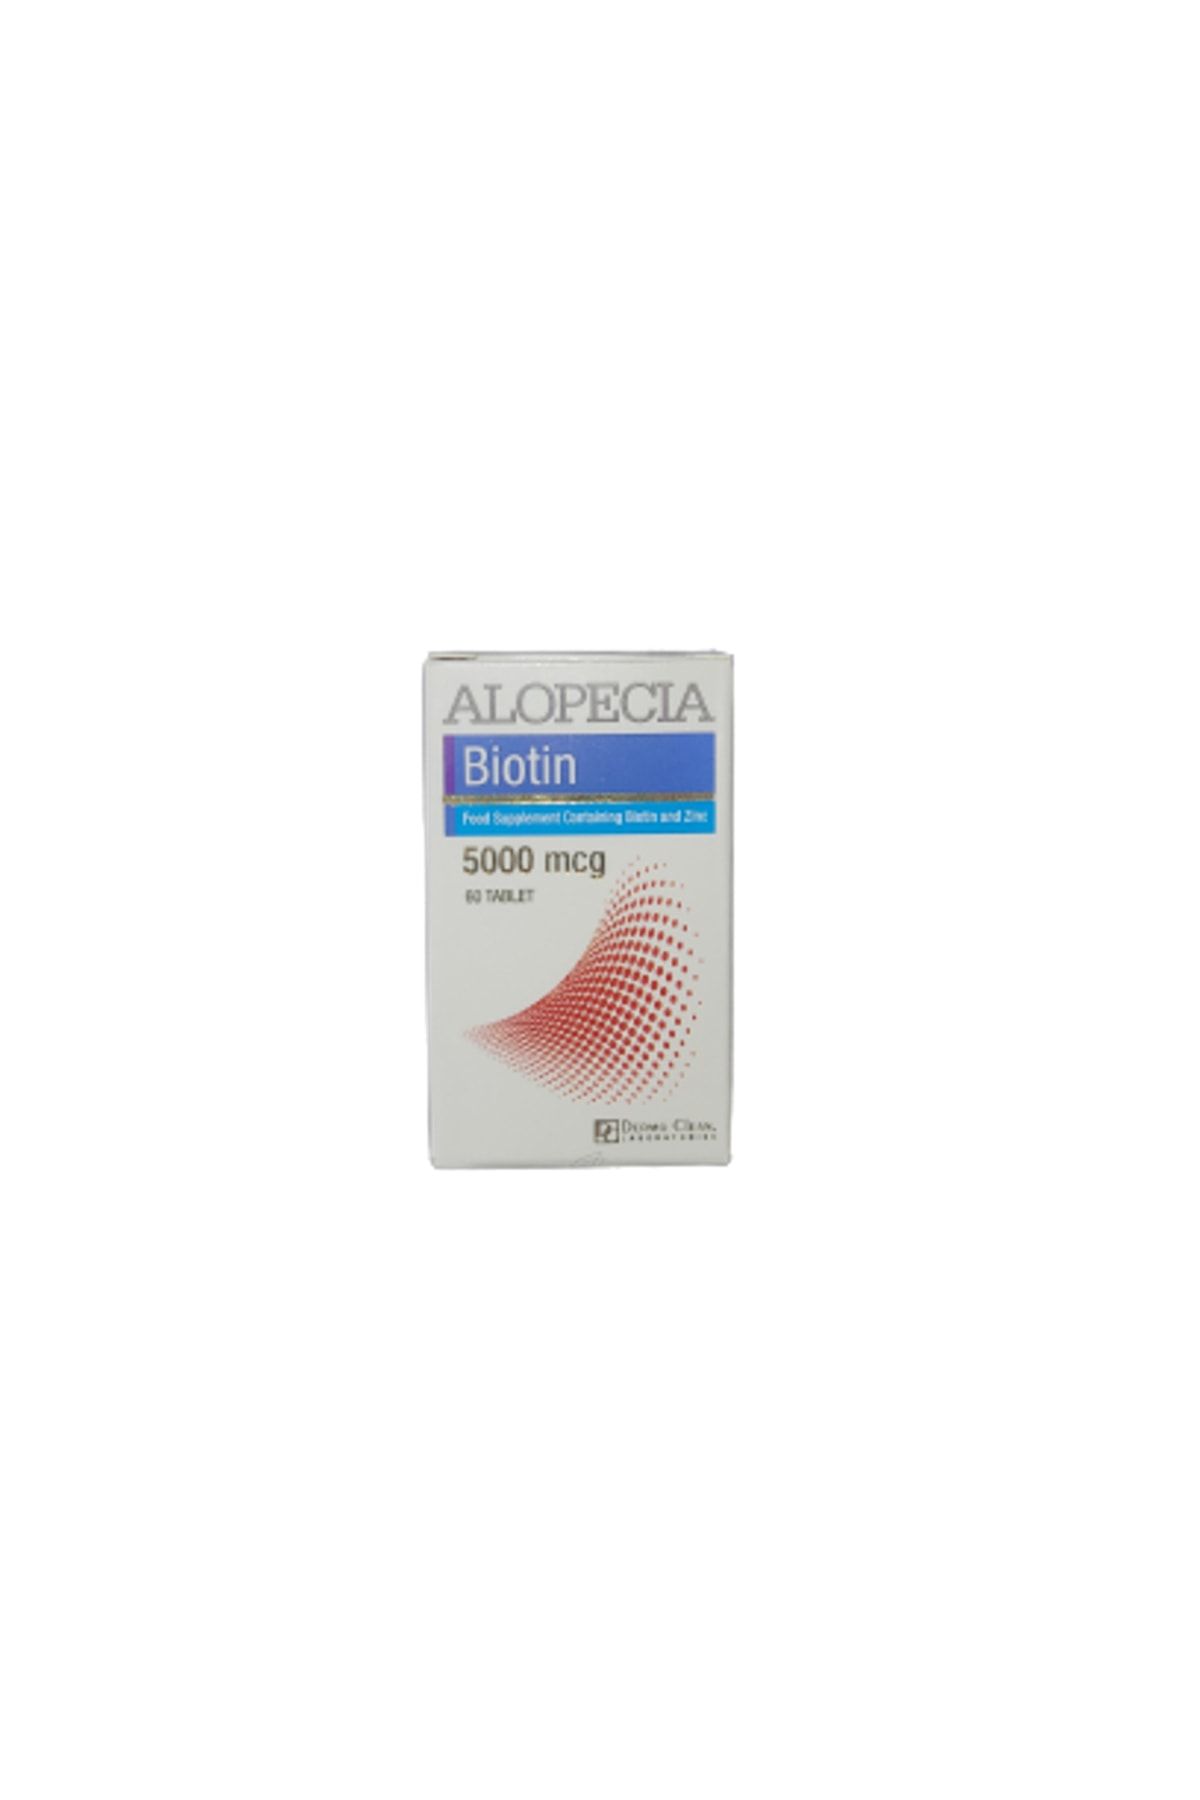 Alopecia Super Potency Biotin 5000 Mcg 60 Tablet - Saç Bakım Tableti